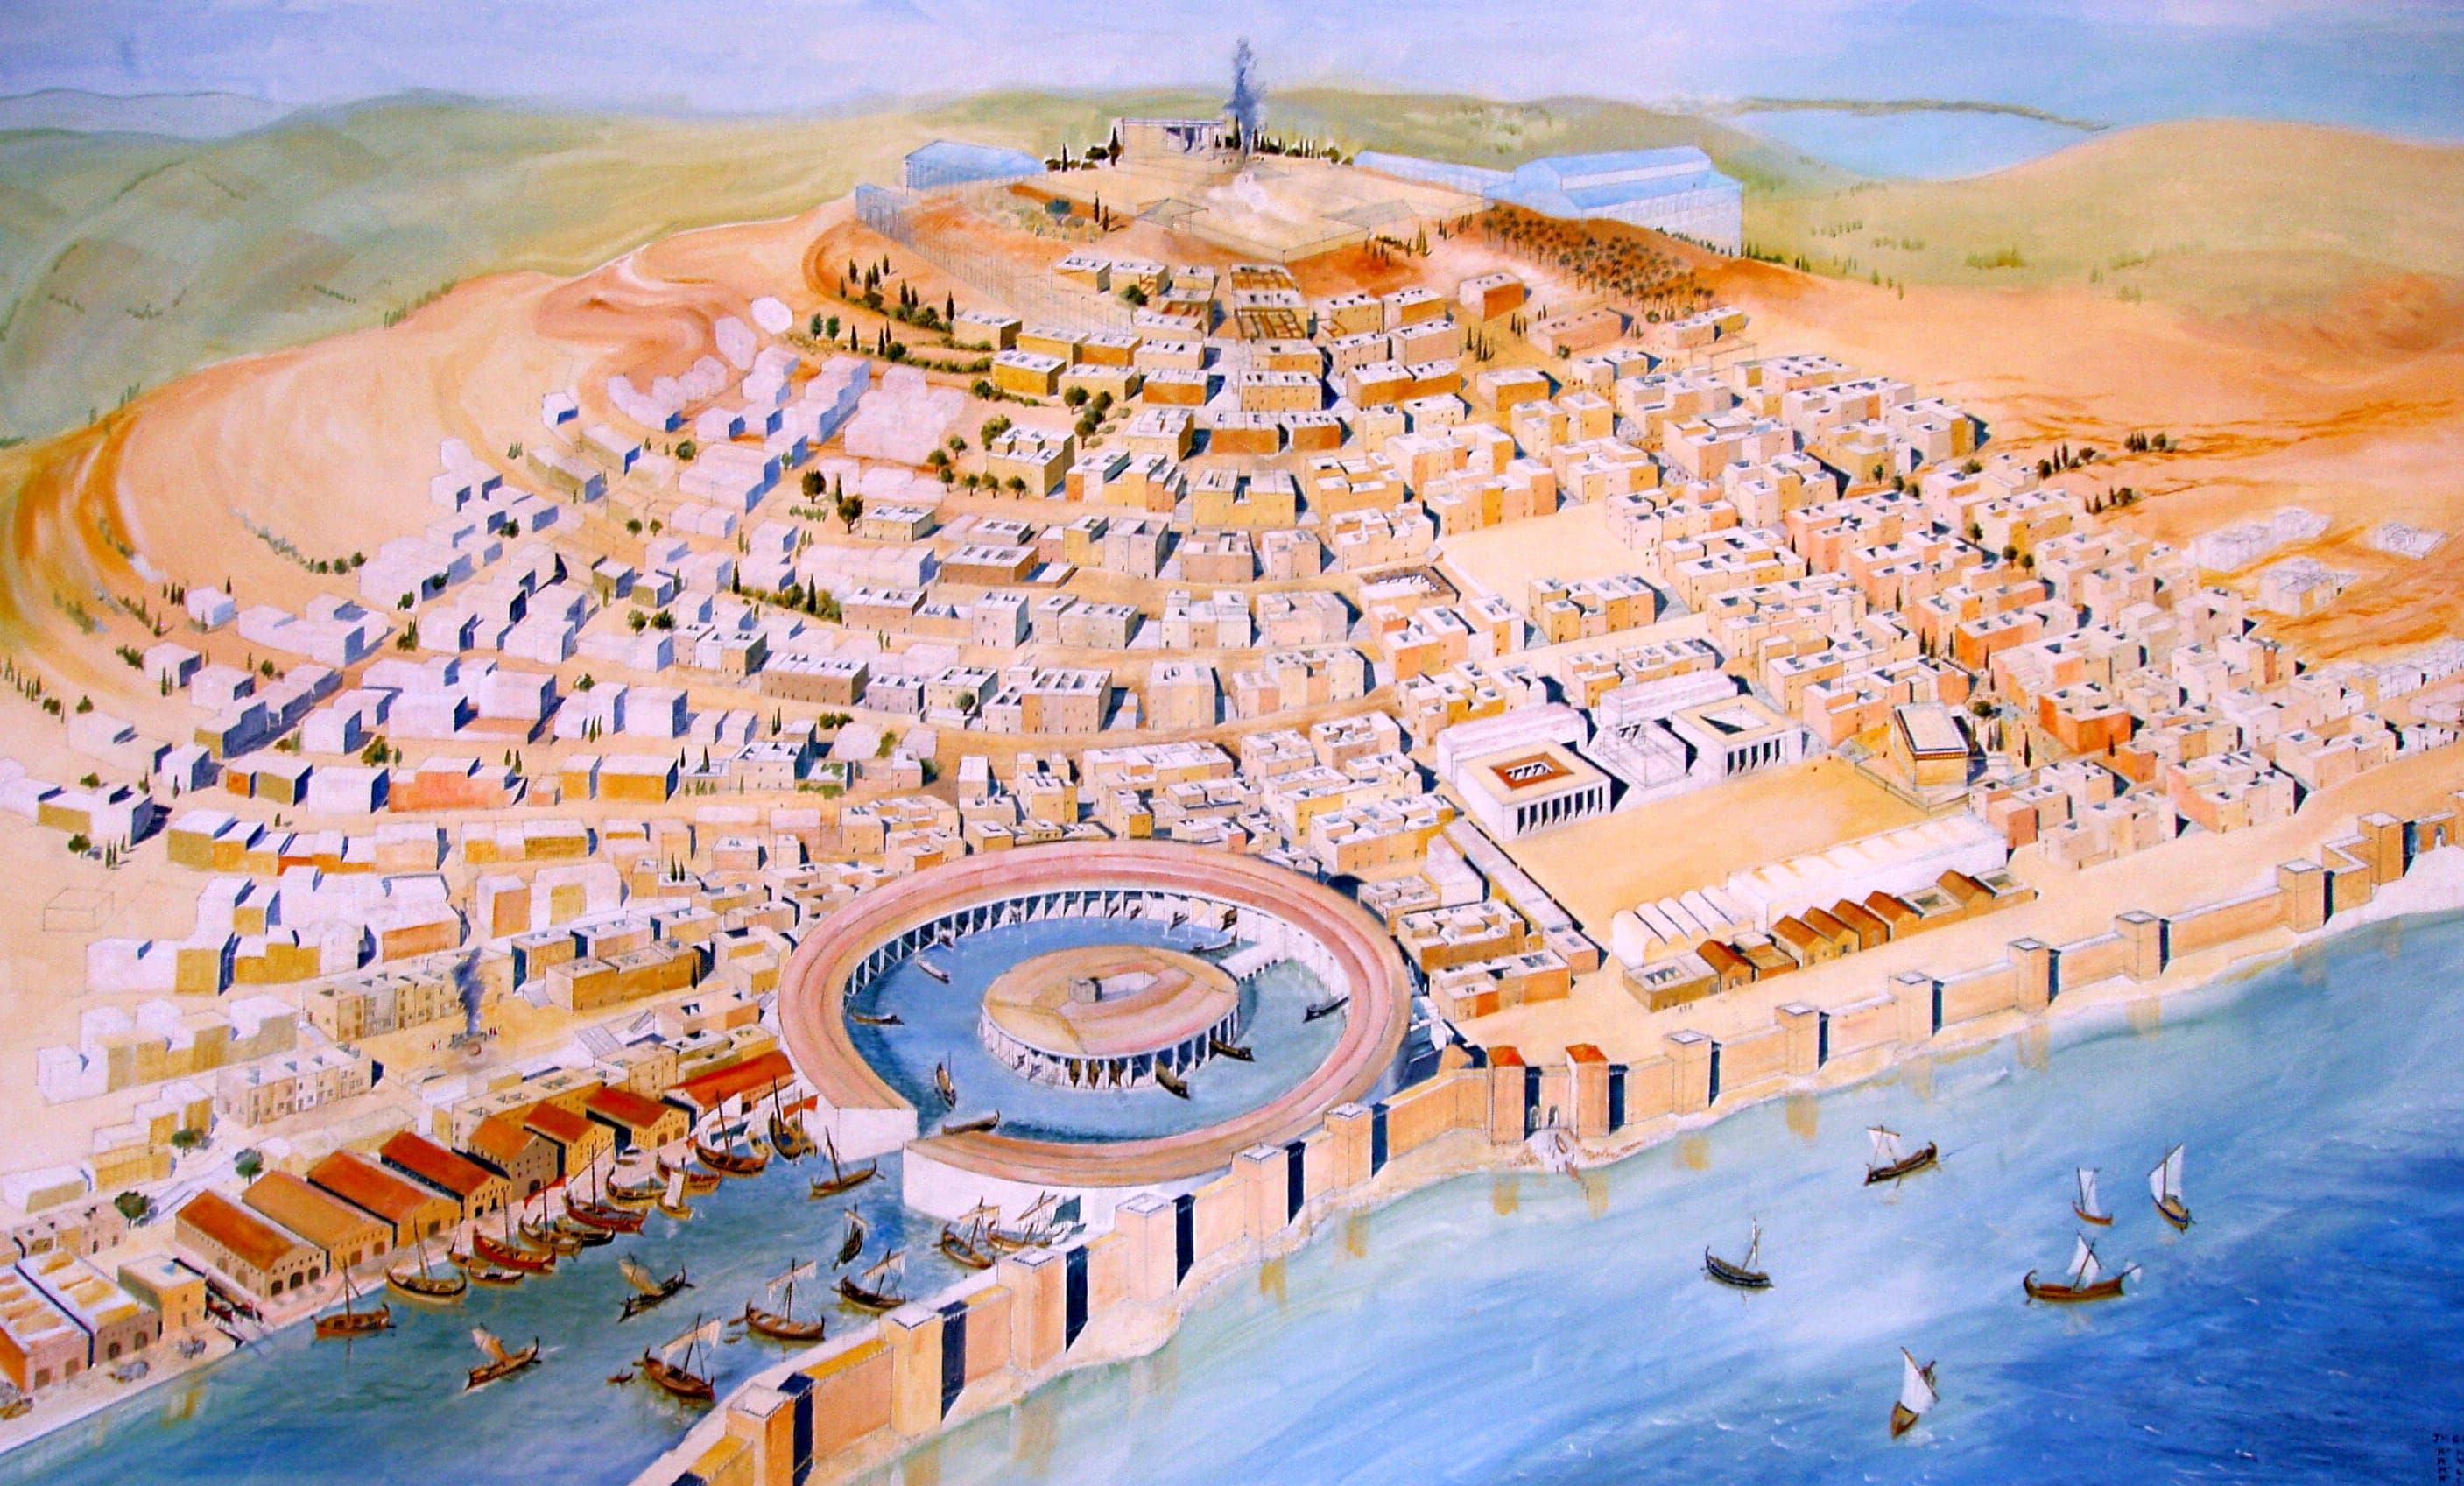 Reconstruction moderne de la Carthage punique. Le port circulaire à l'avant est le Cothon, le port militaire de Carthage, où tous les navires de guerre de Carthage (Biremes) étaient ancrés.
Wiki Commons